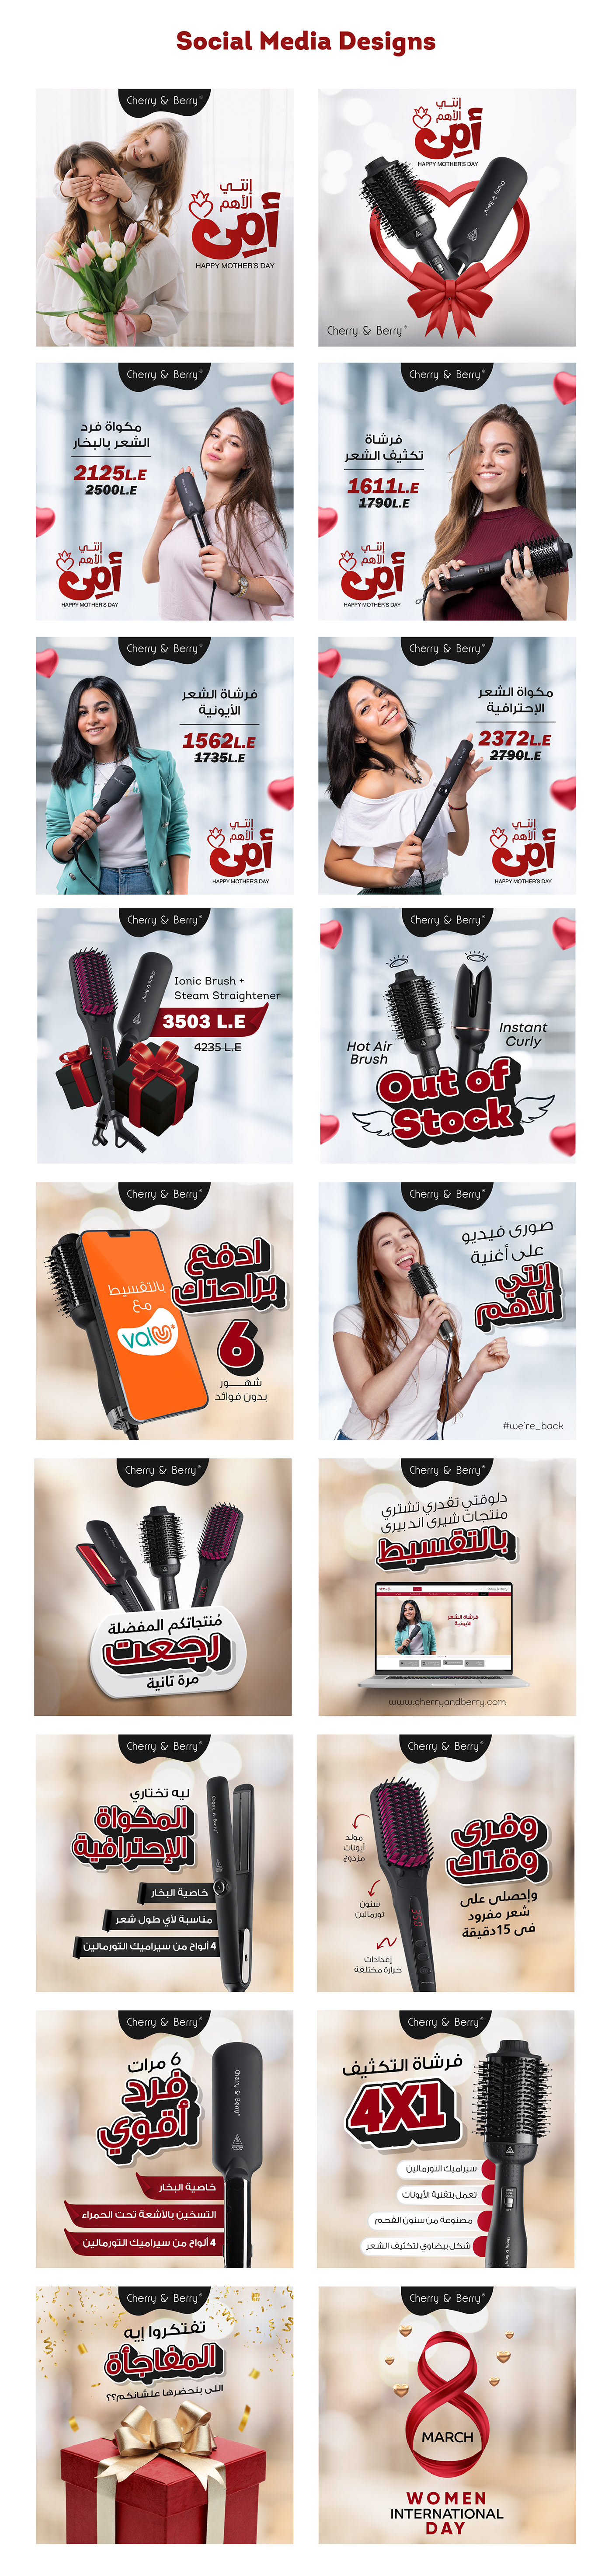 Advertising  banner cosmetics hair hair products marketing   post social media Social media post Socialmedia